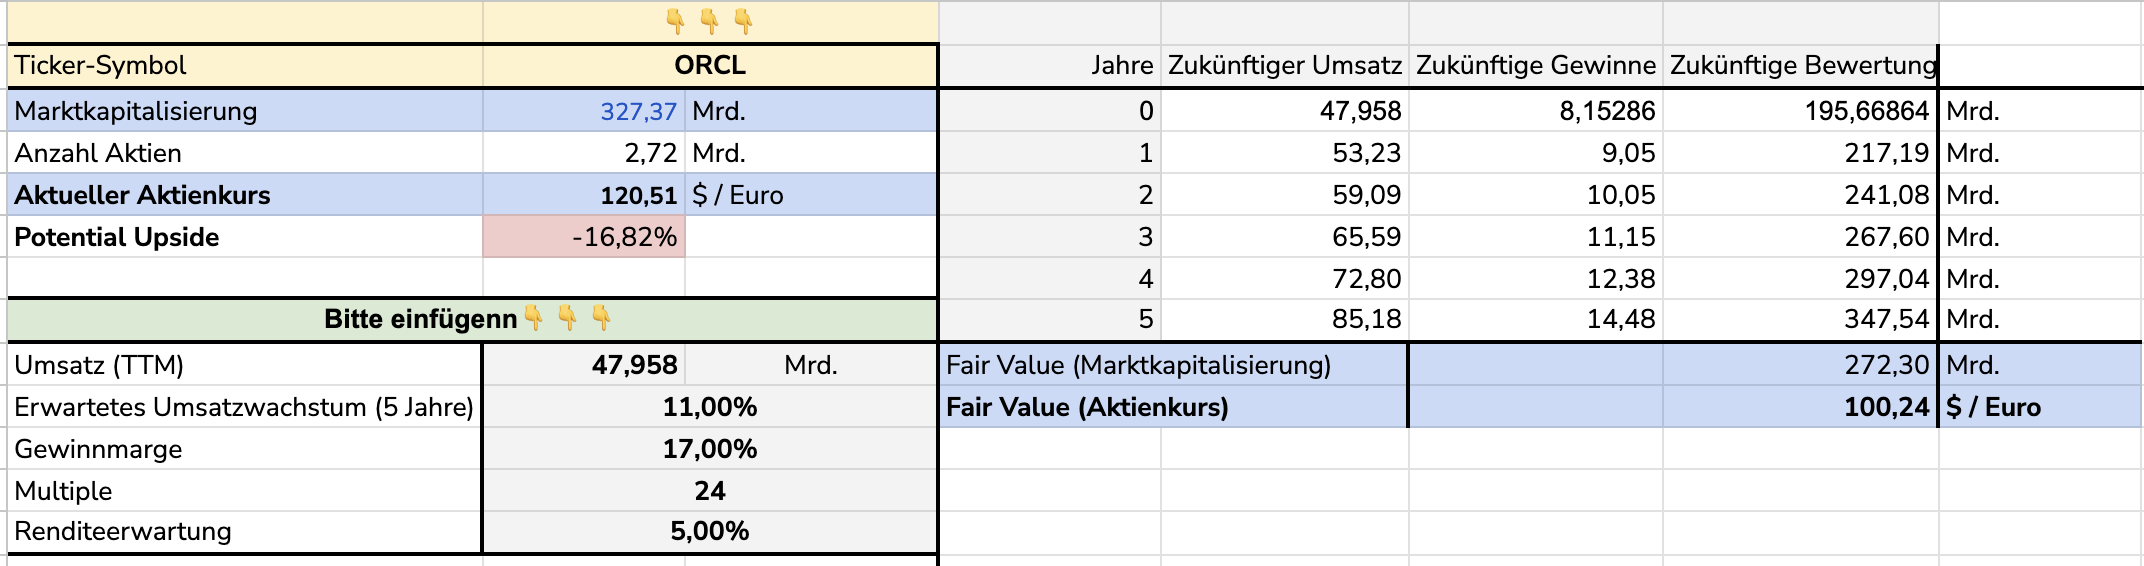 Den-fairen-Wert-von-Aktien-bestimmen-ein-zweites-Modell-Valentin-Schelbert-stock3.com-1